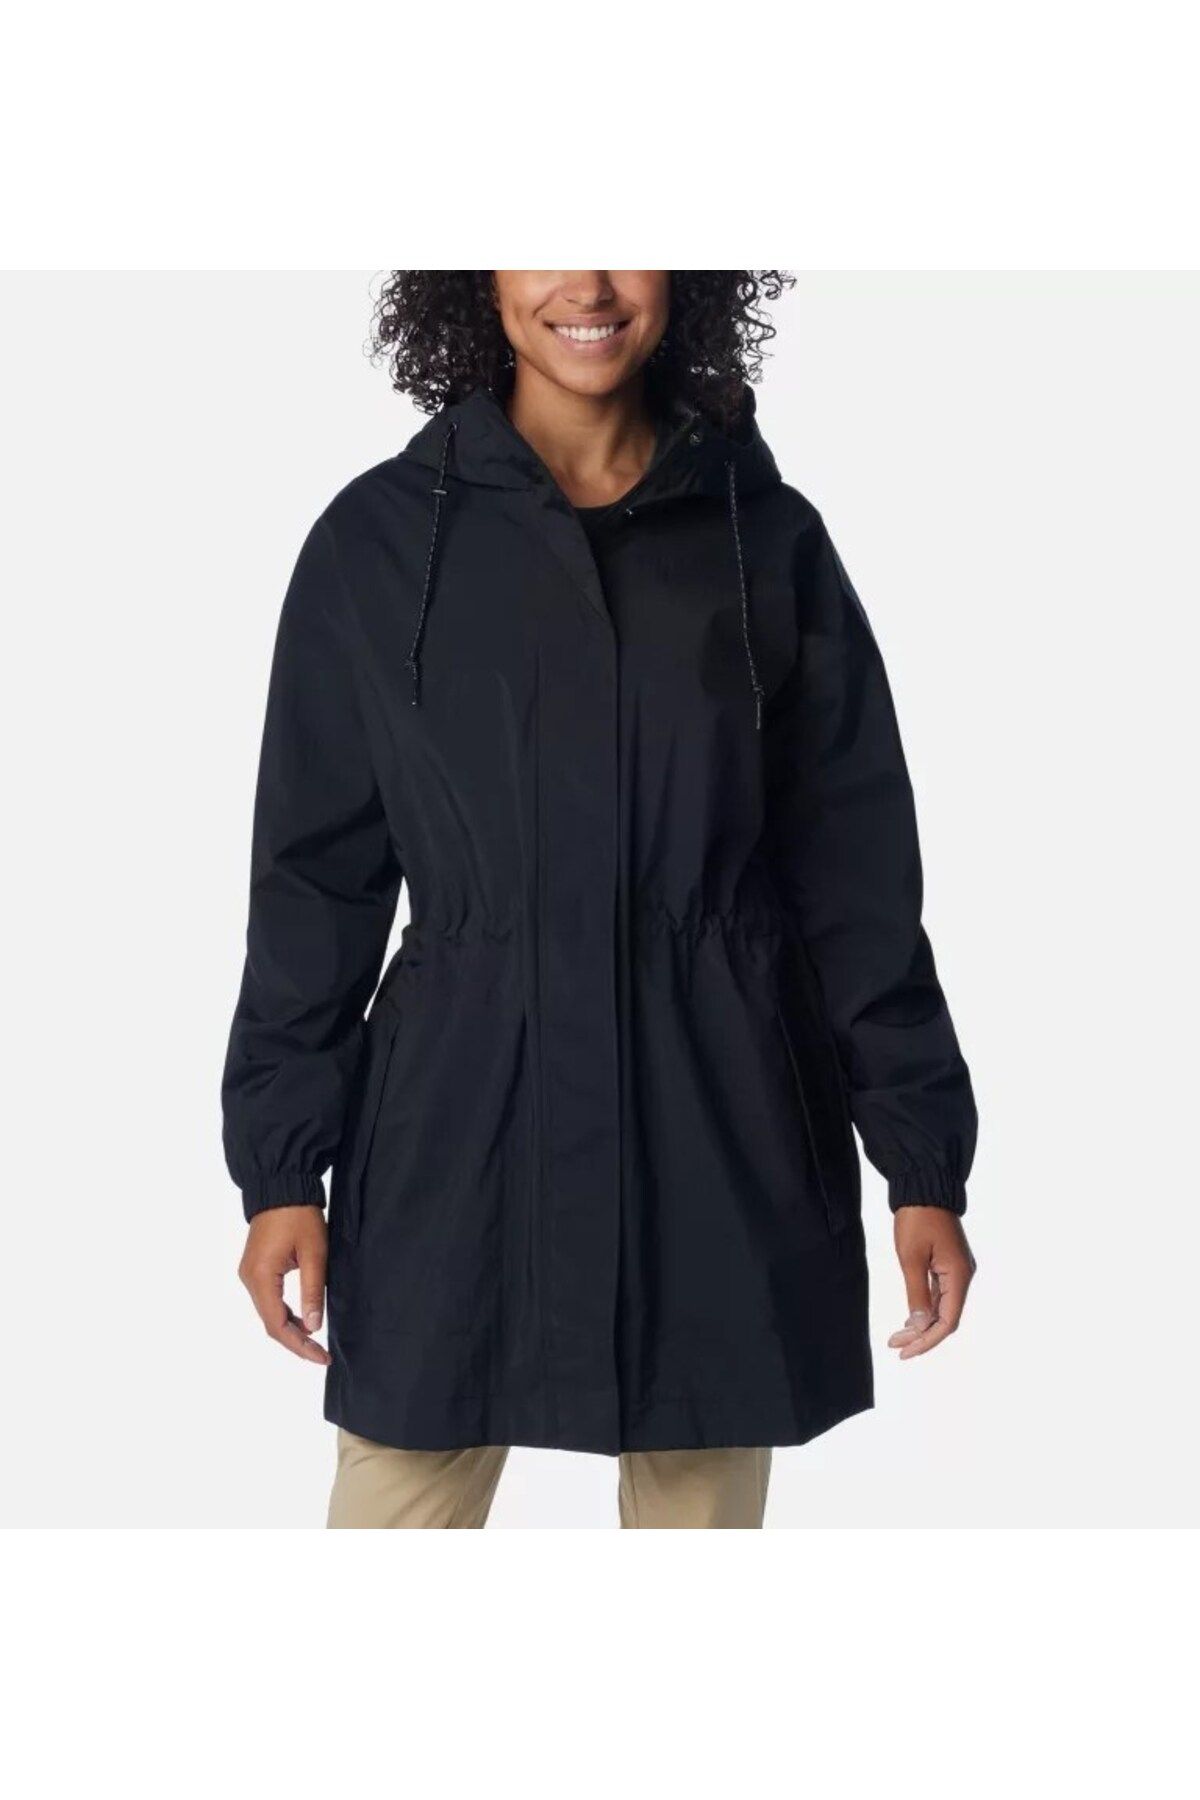 Columbia Columbıa Wl0355 Splash Sıde Jacket Kadın Koyu Gri Yağmurluk Wl0355-011